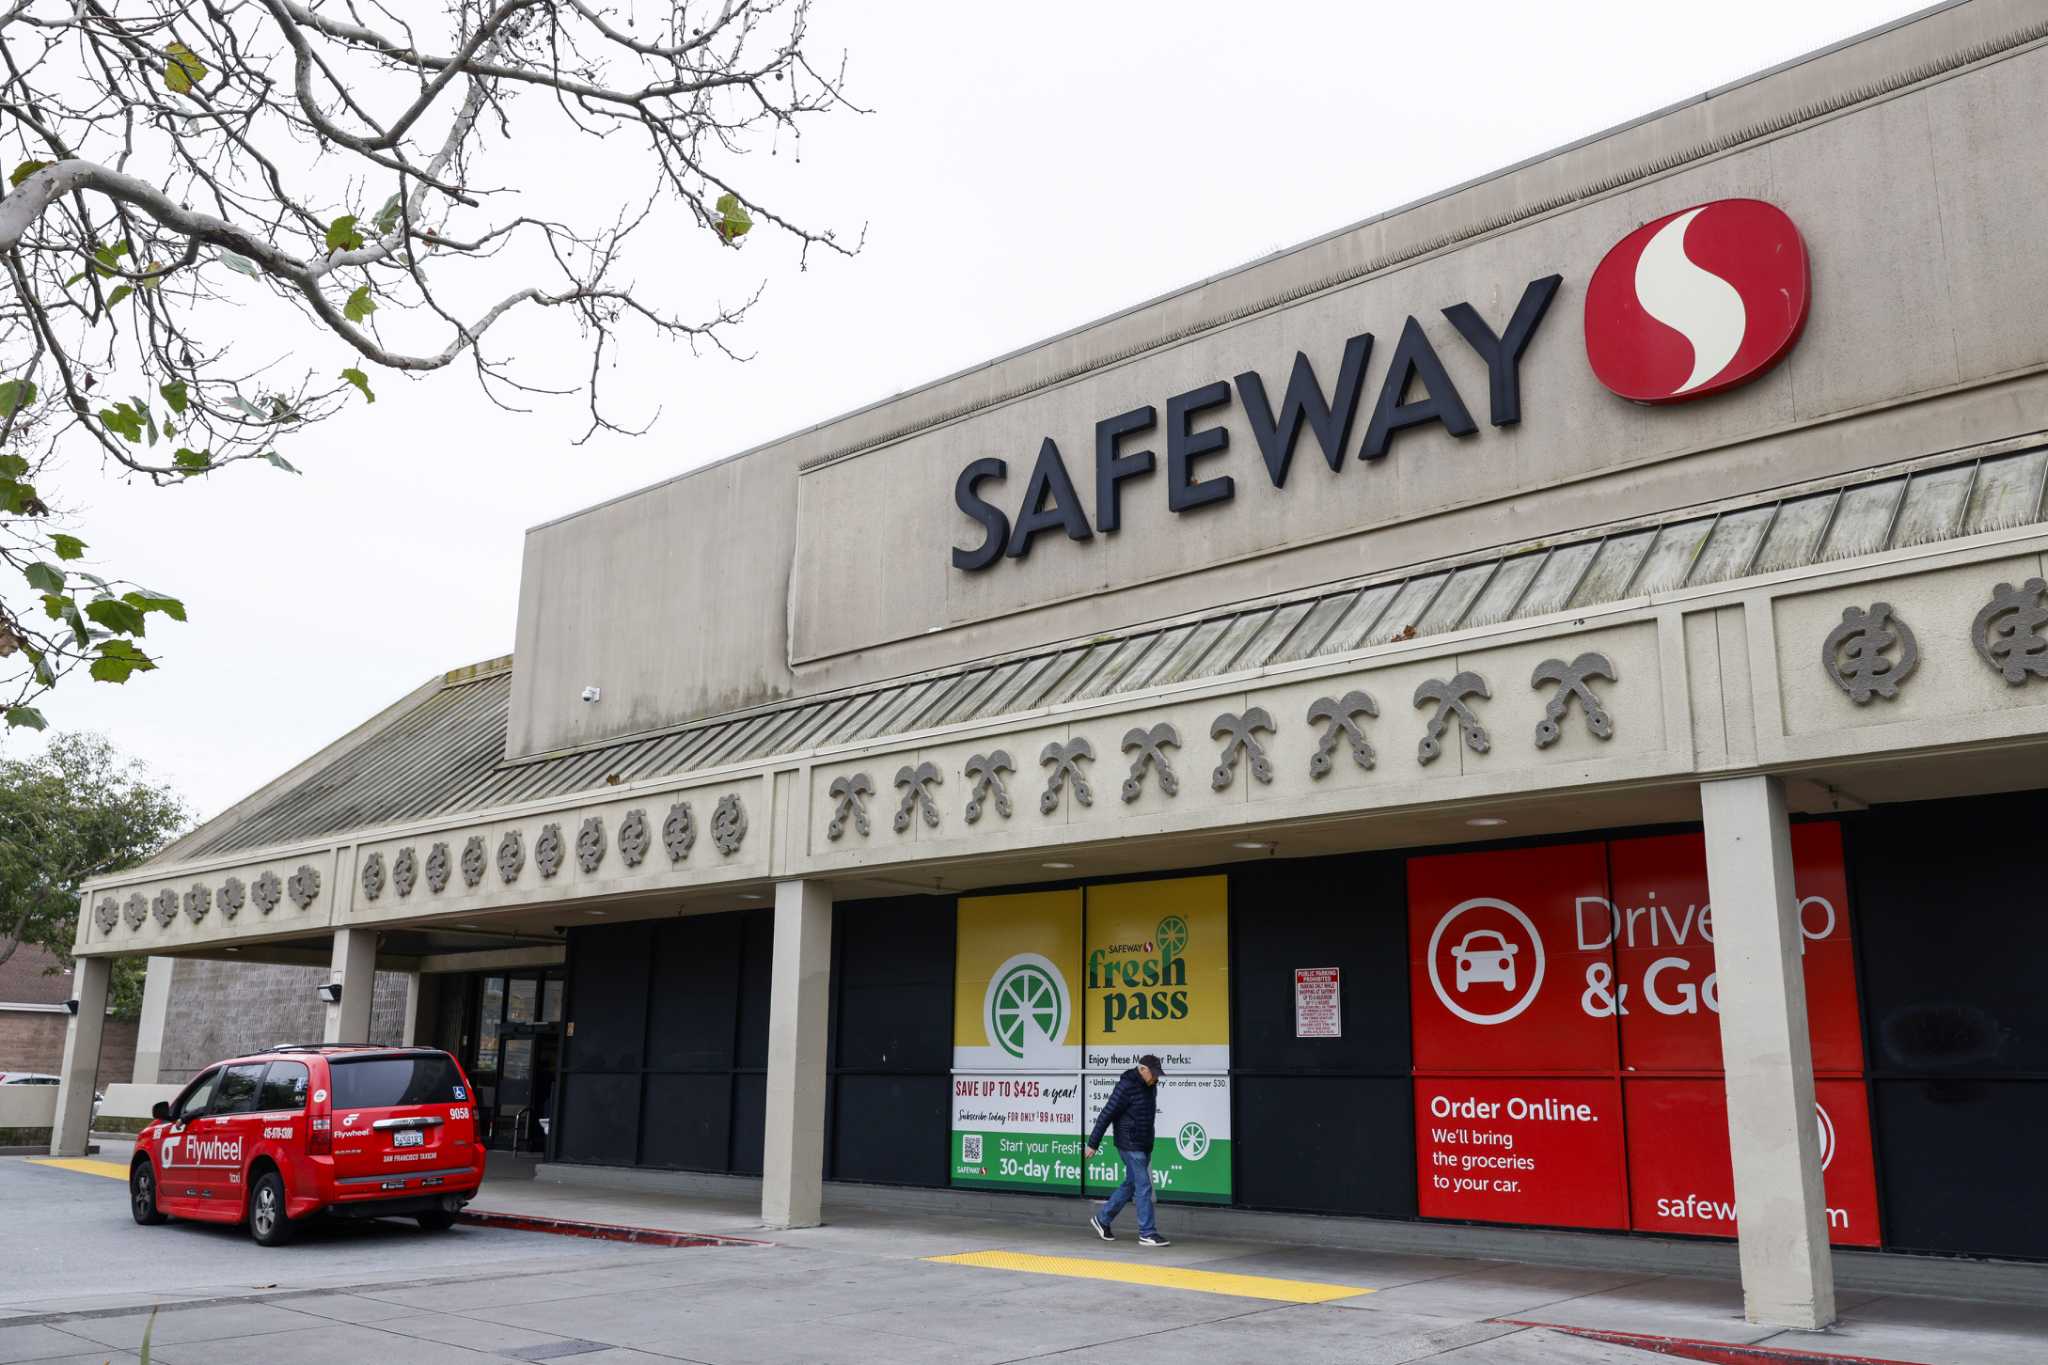 旧金山菲尔莫尔区的安全路超市事件唤起一些令人不安的回忆